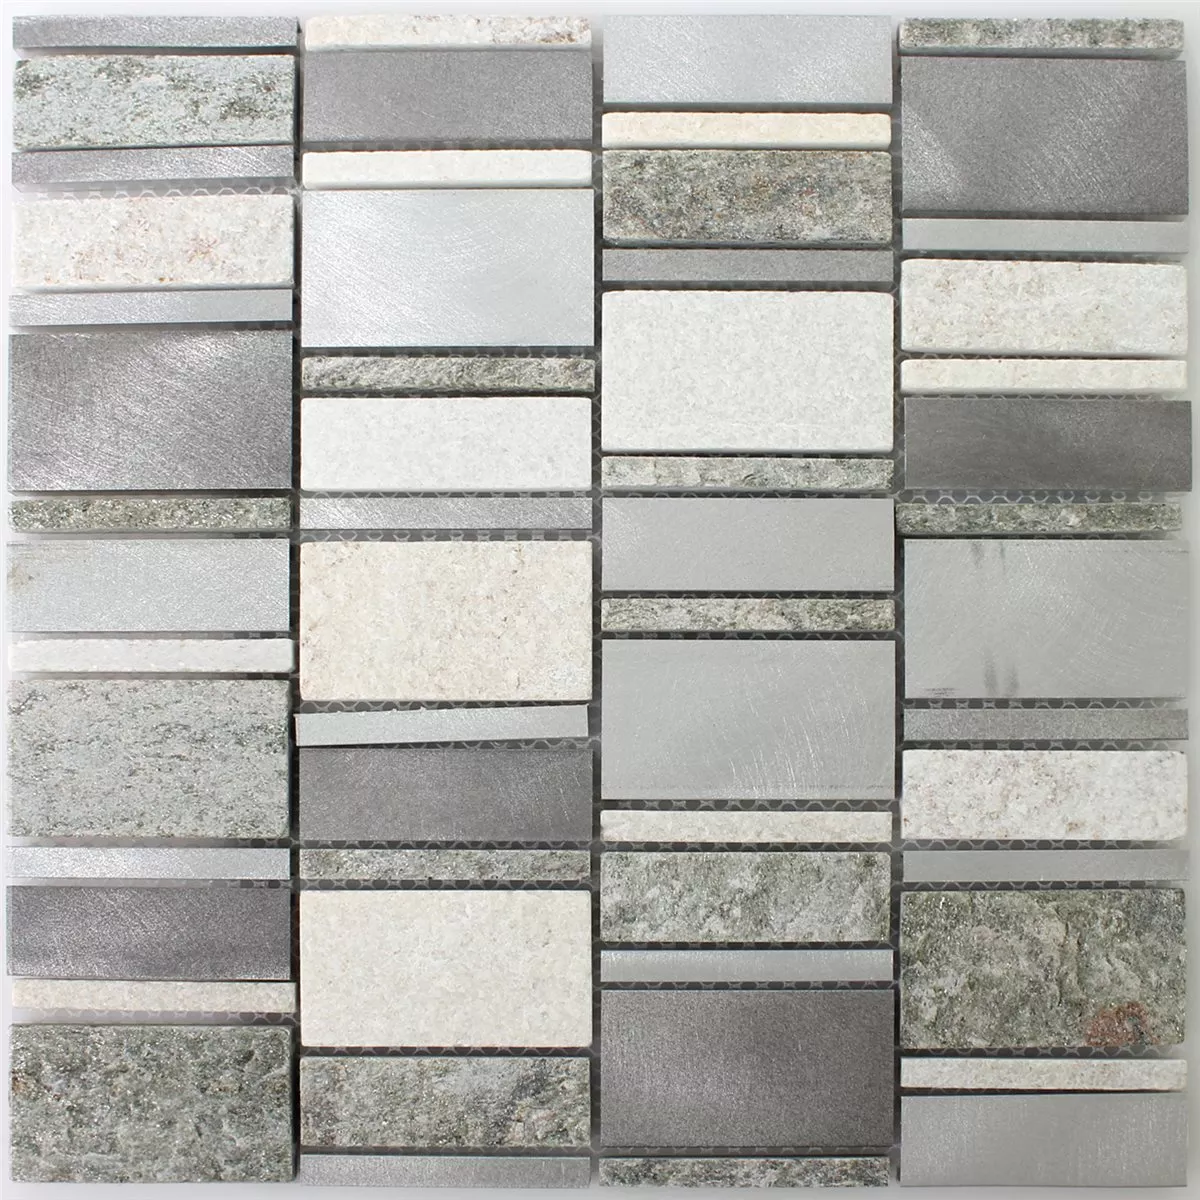 Campione Mosaico Quarzite Alluminio Argento Mix